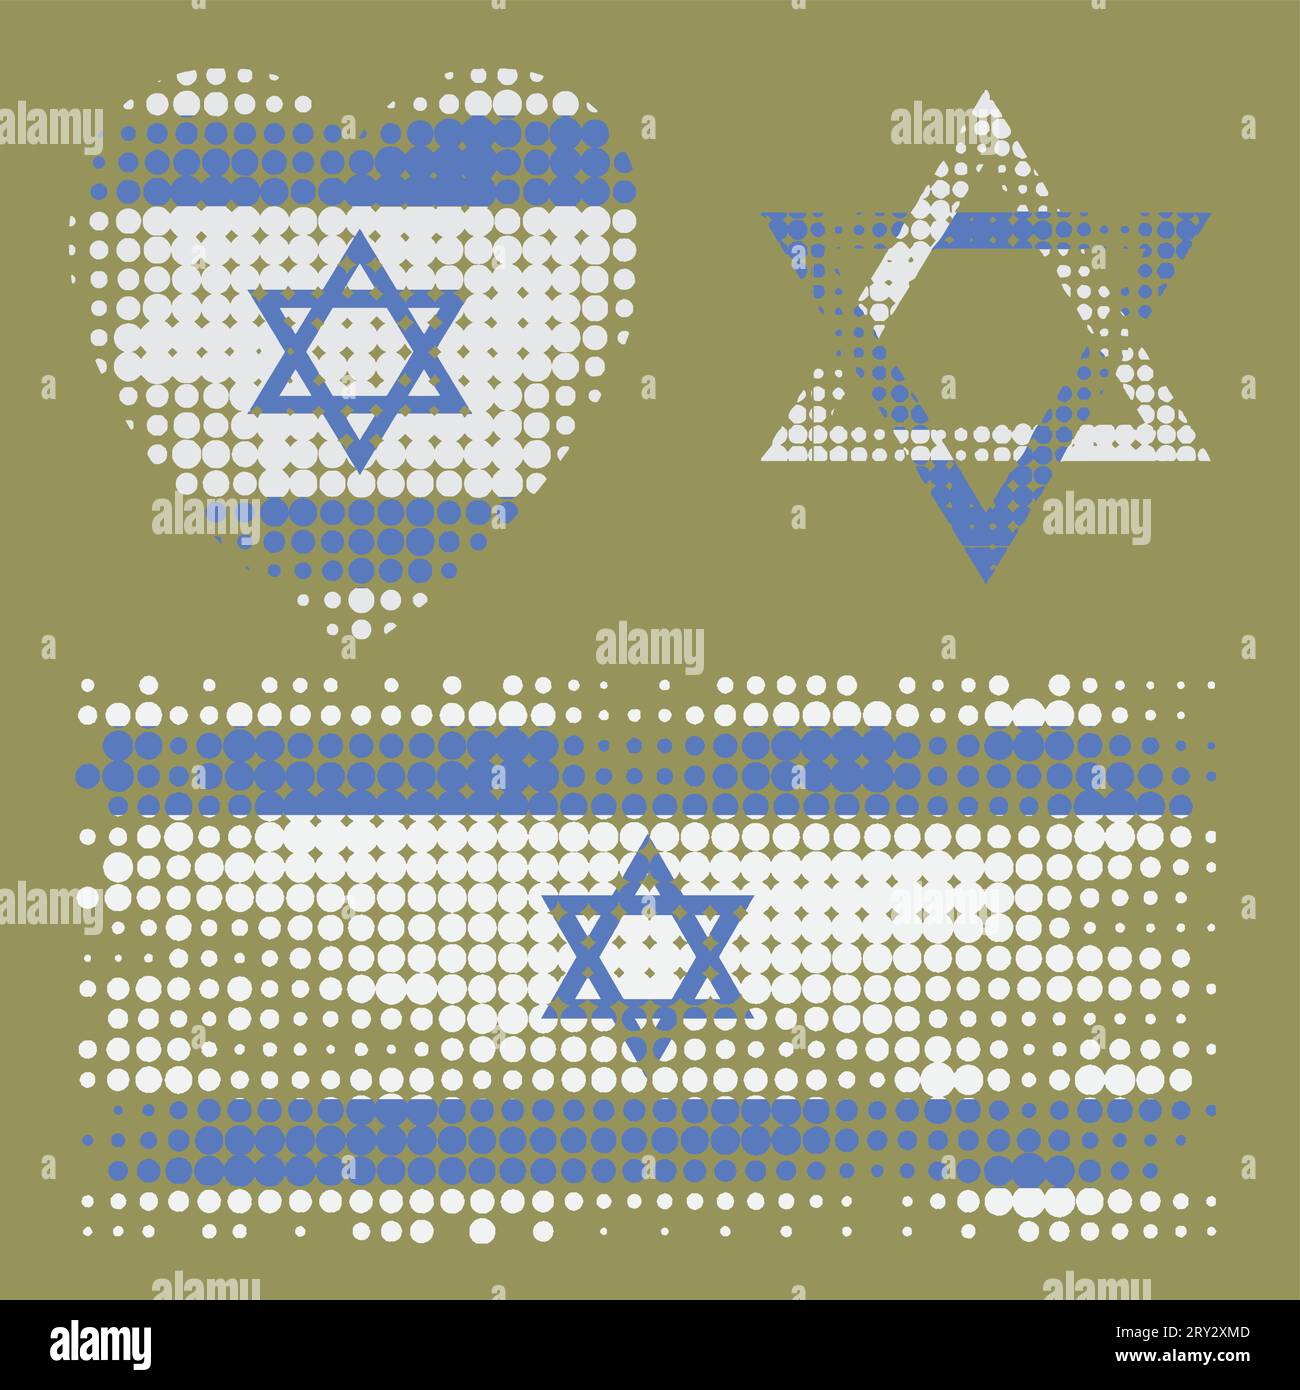 Israelische Flagge, Herz und Davids Stern. Halbtonstruktur. Olivgrüner Hintergrund. Stock Vektor